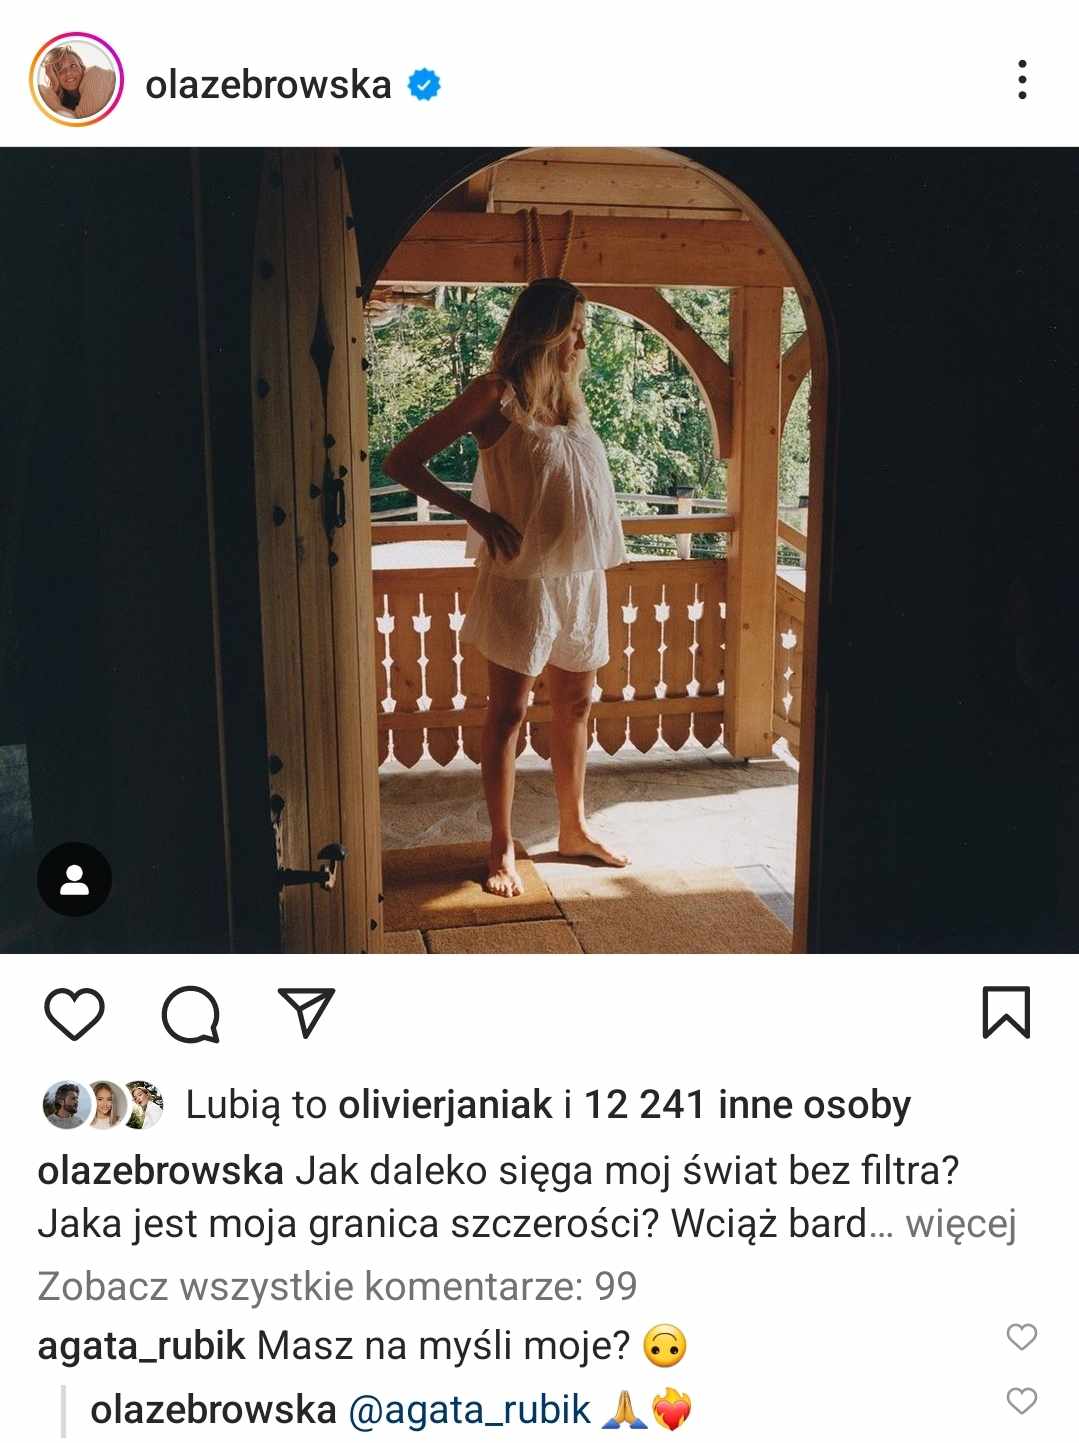 Agata Rubik odpowiada Oli Żebrowskiej, fot. Instagram/olazebrowska